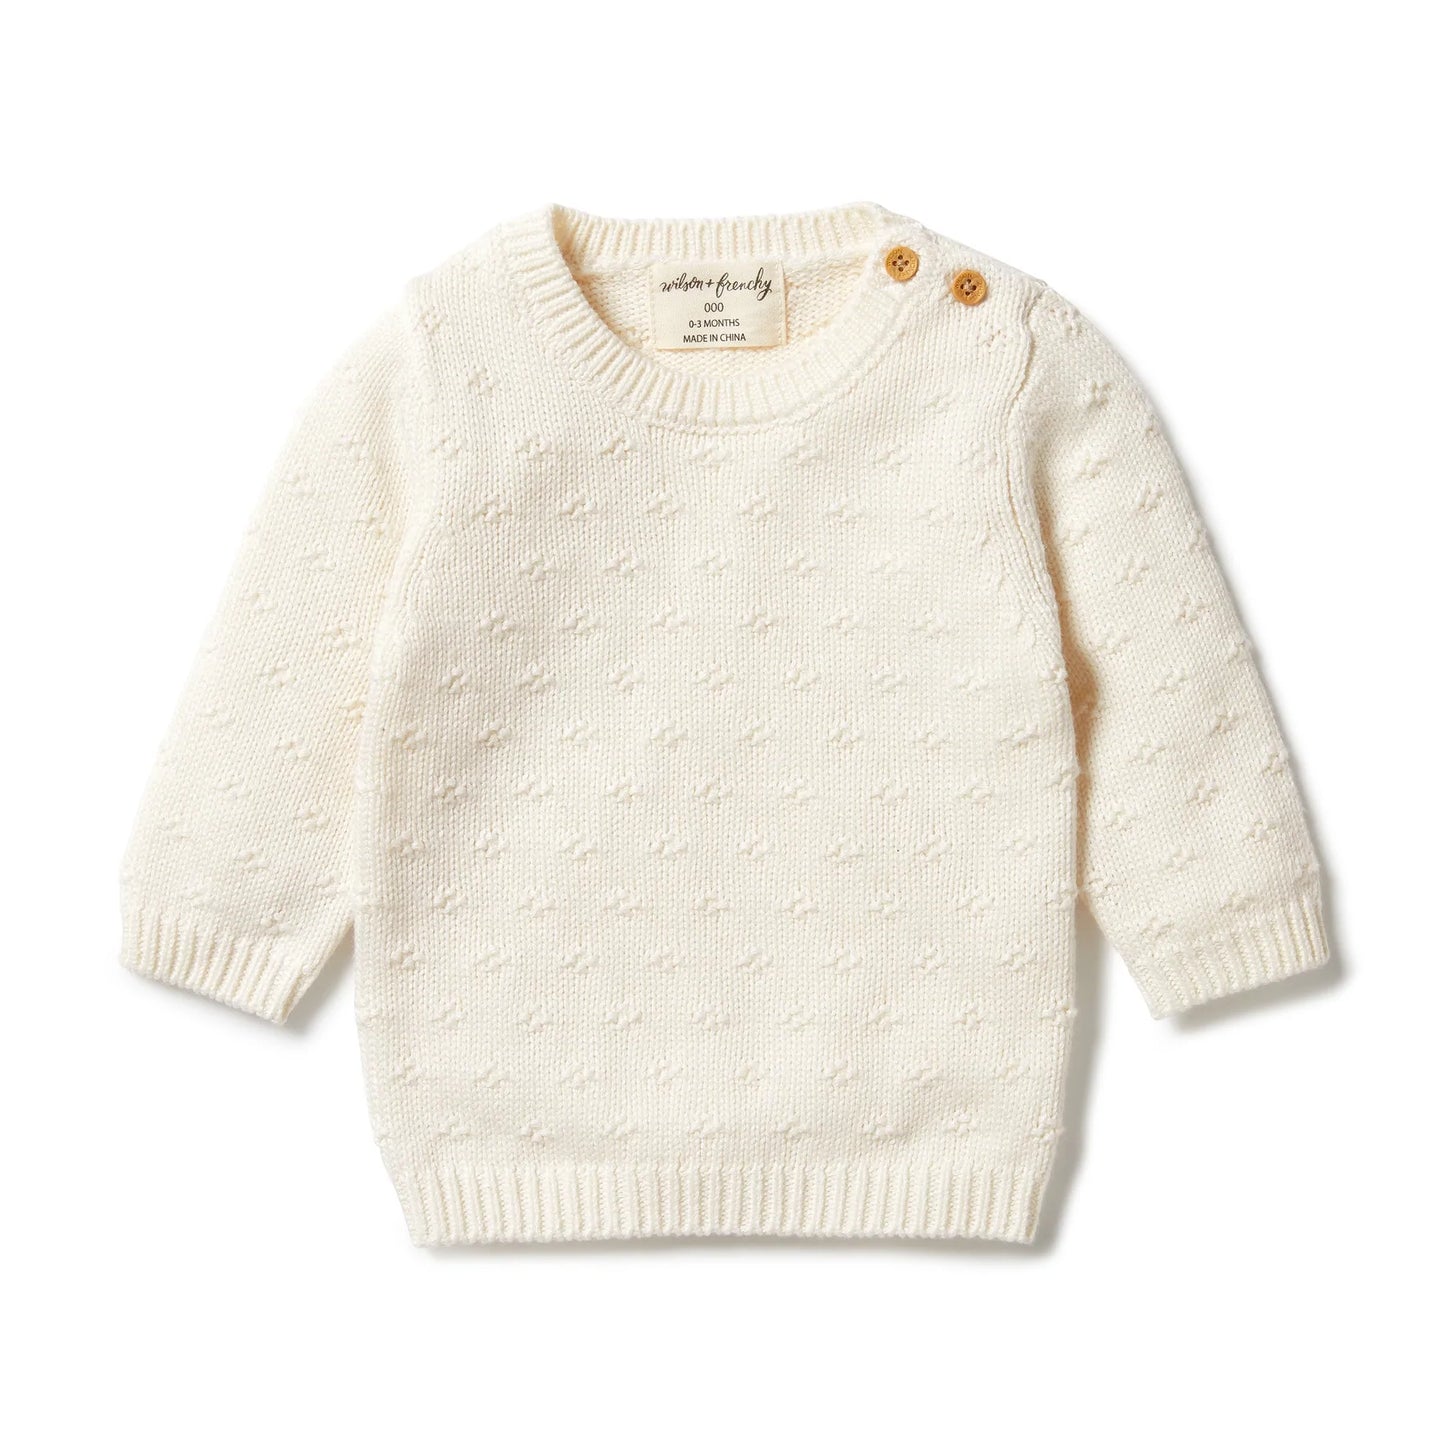 Gardenia Knit Sweater